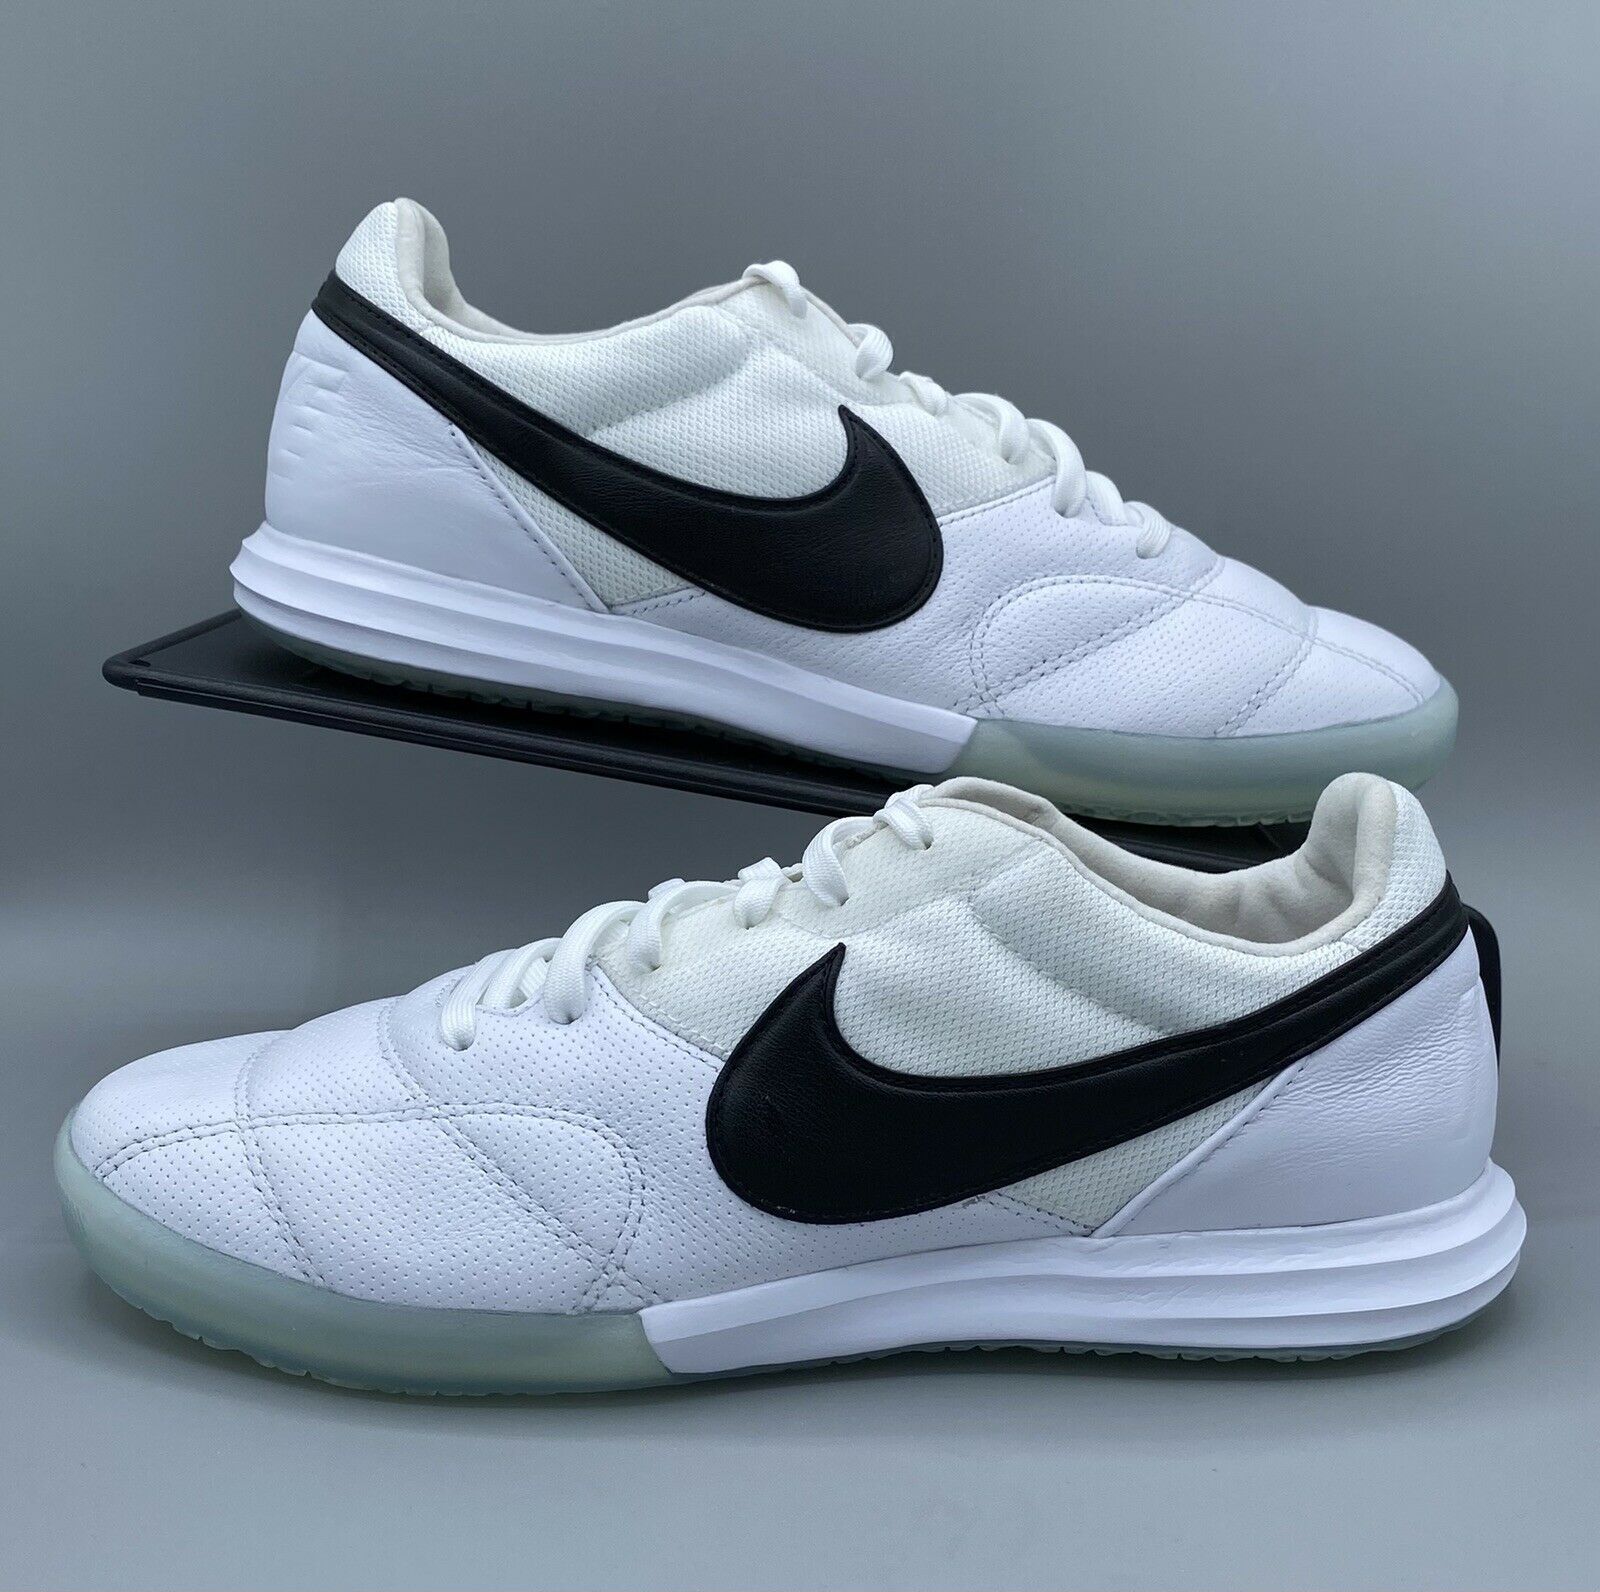 Nike Premier II Sala Indoor Soccer Shoes Men’s US Size 6 White AV3153-101